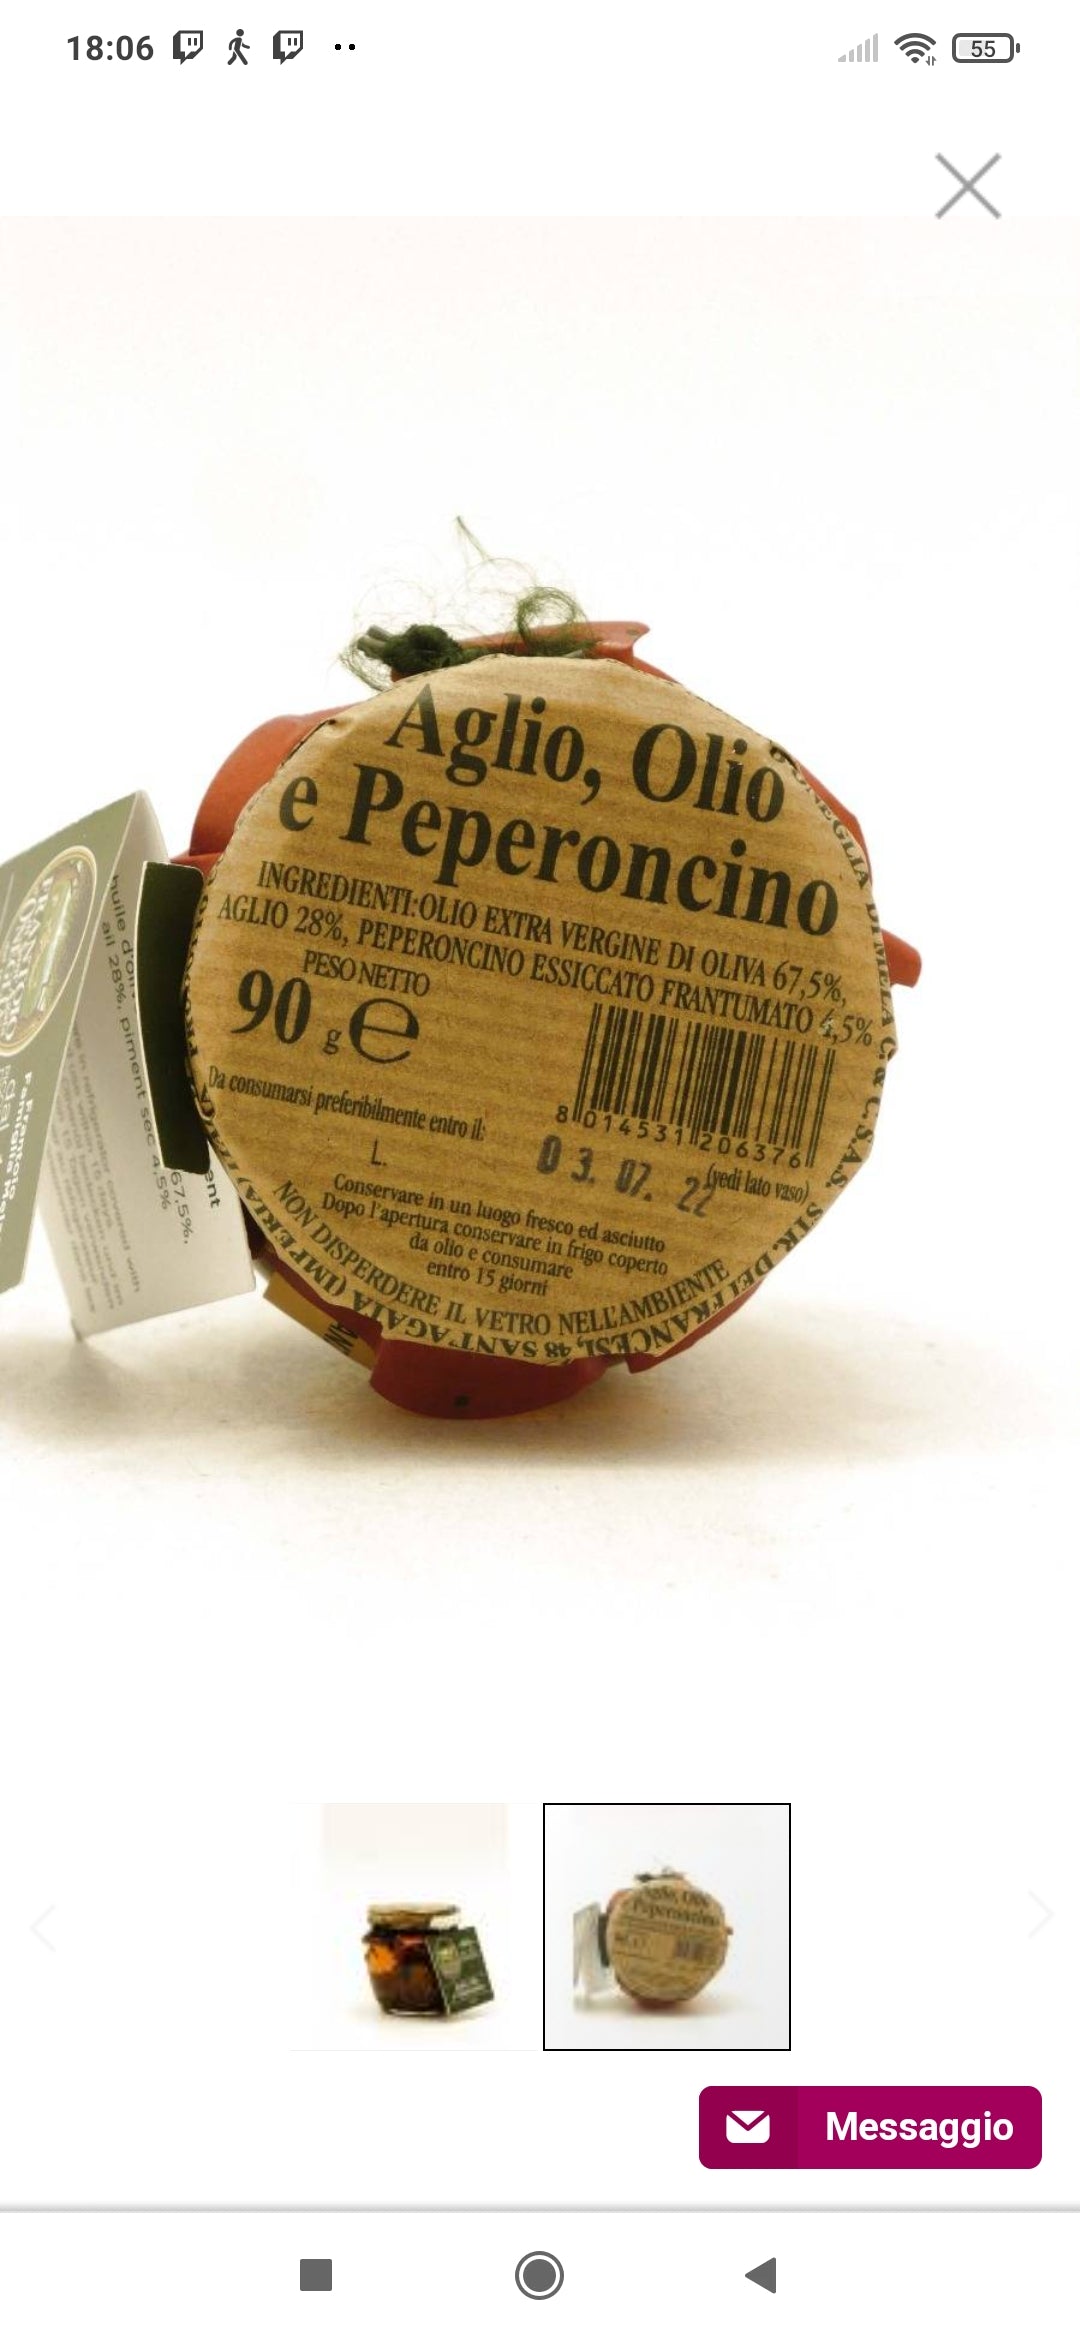 Aglio Olio e Peperoncino 90g - Frantoio di Sant’Agata d’Oneglia